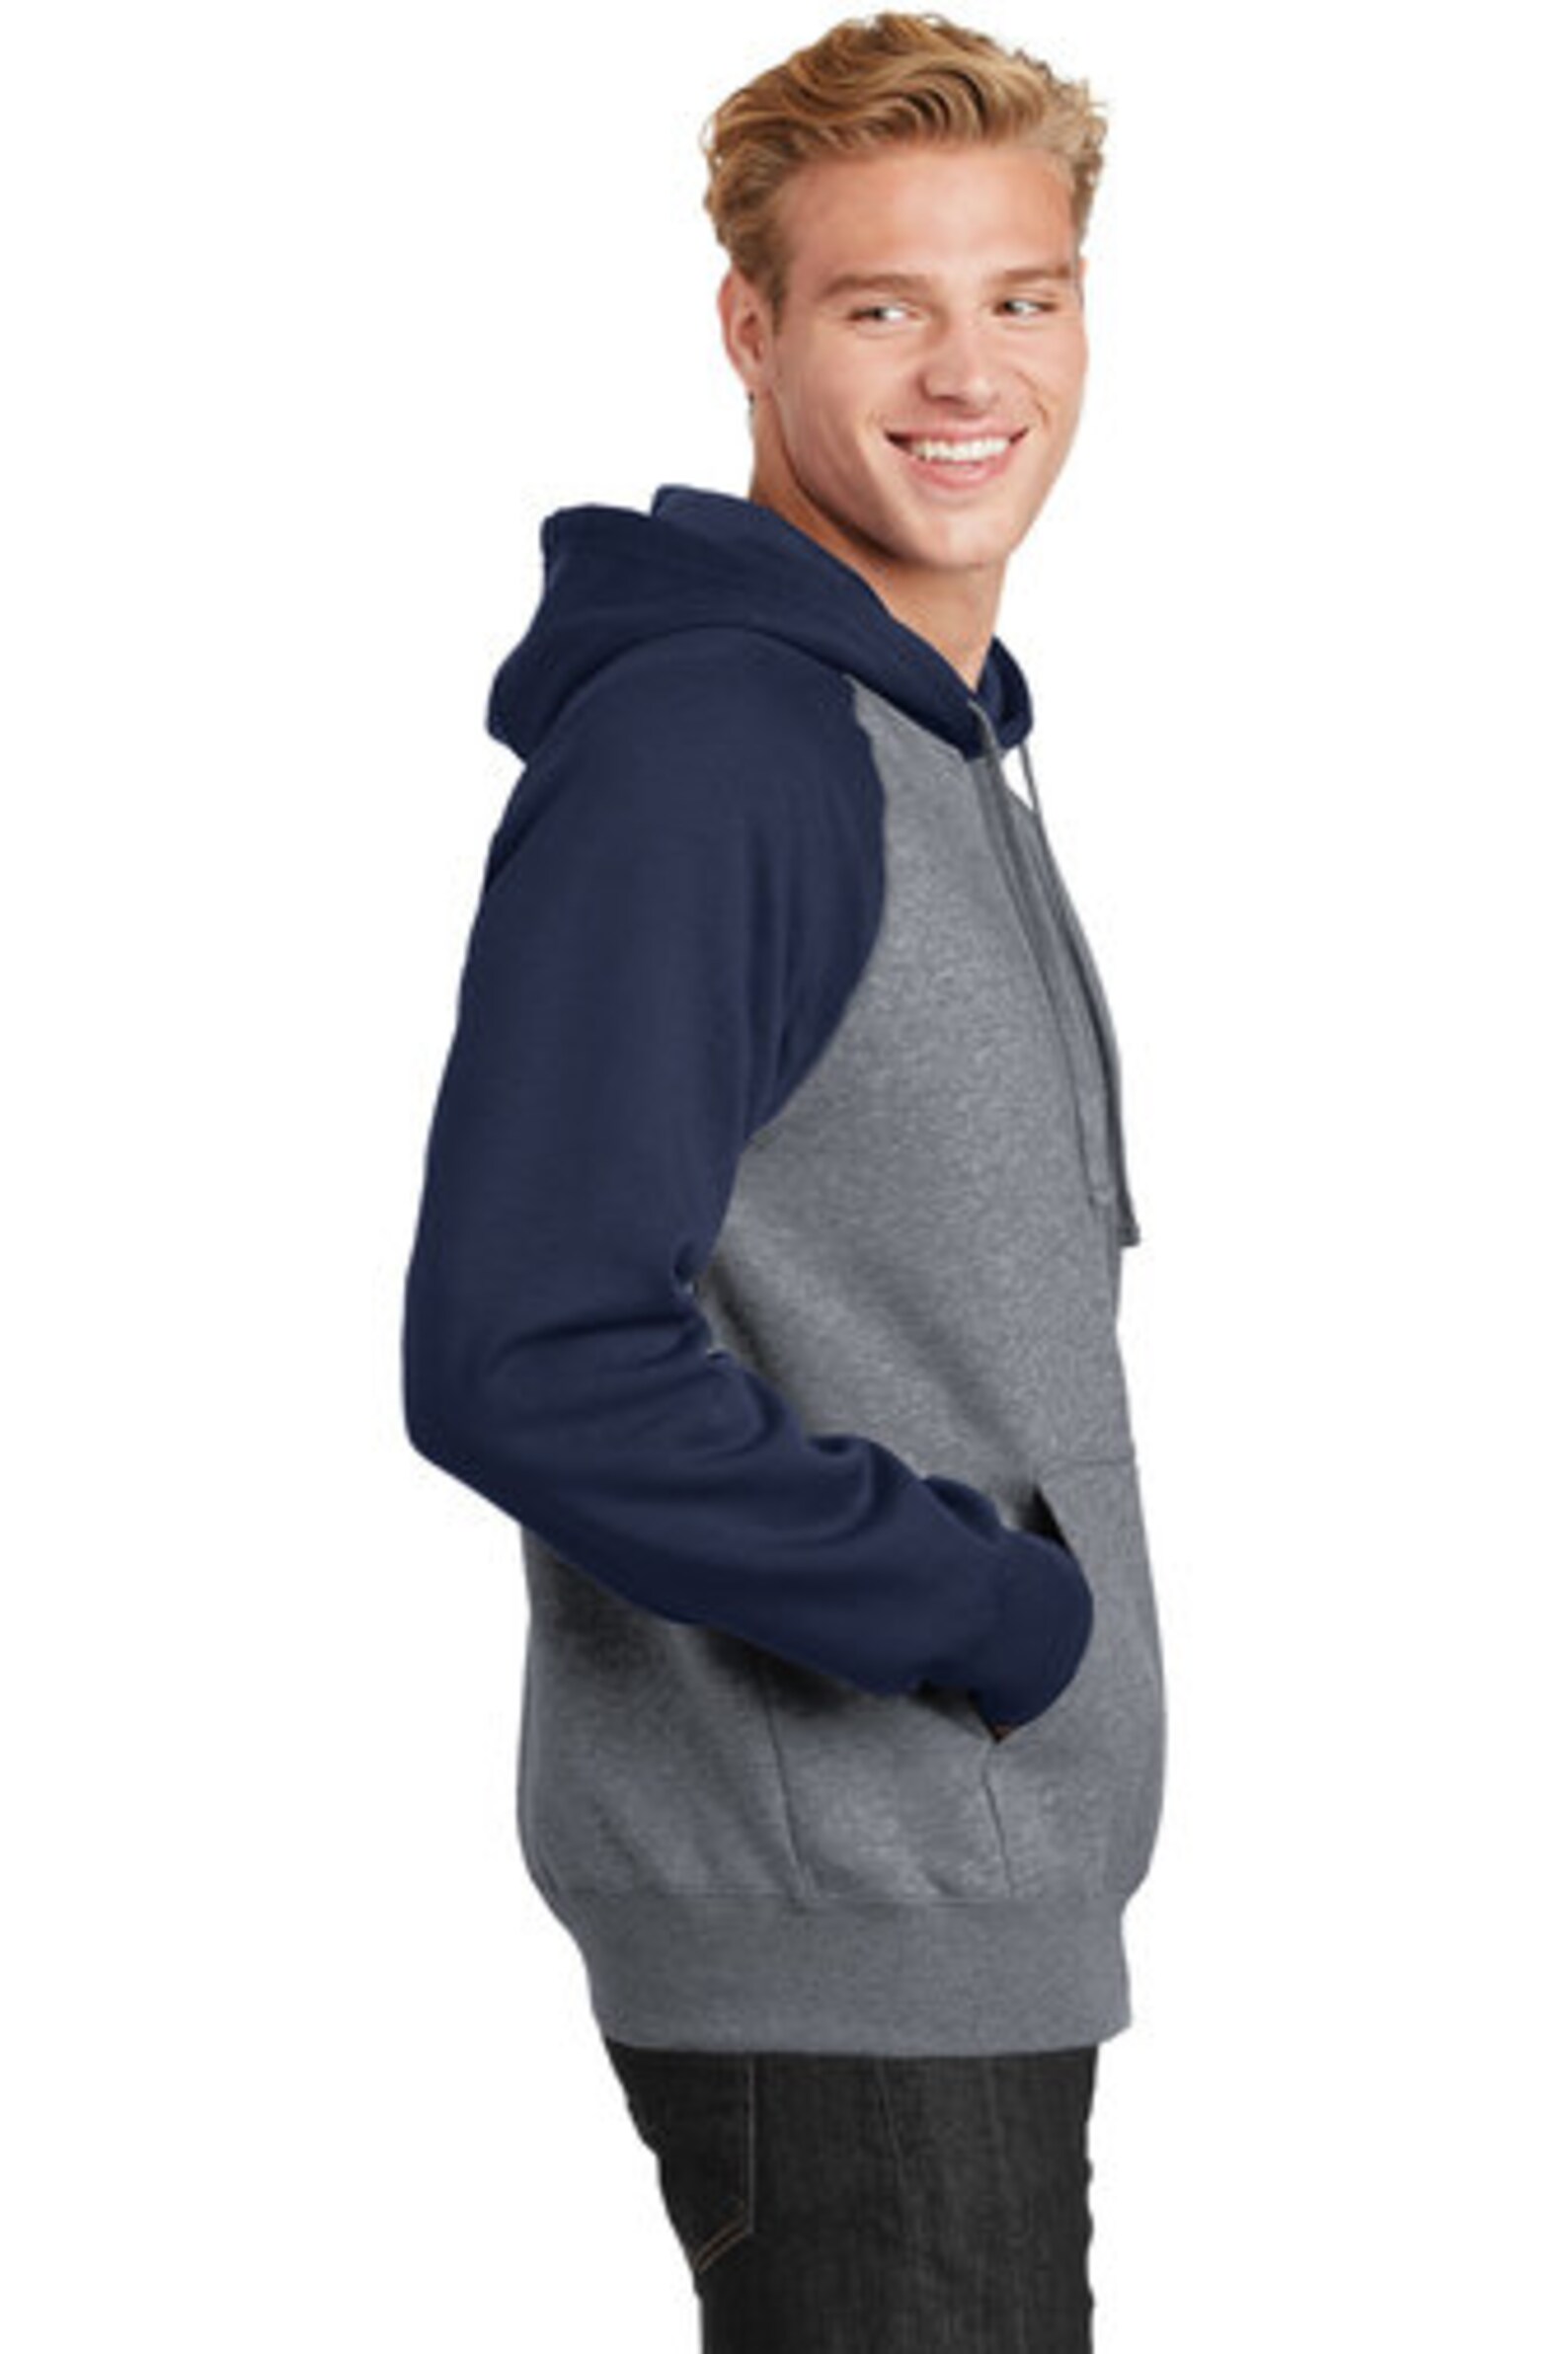 Custom Printed Raglan Colorblock Pullover Hooded Sweatshirt / | Etsy